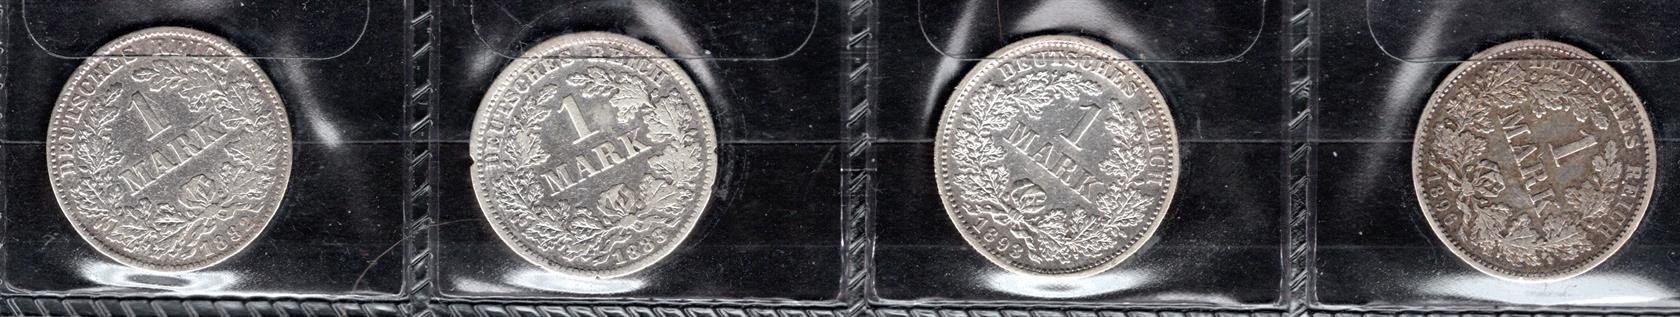 Německo, soubor mincí, zachovalost dle stavu, roky ex 1880 -1911